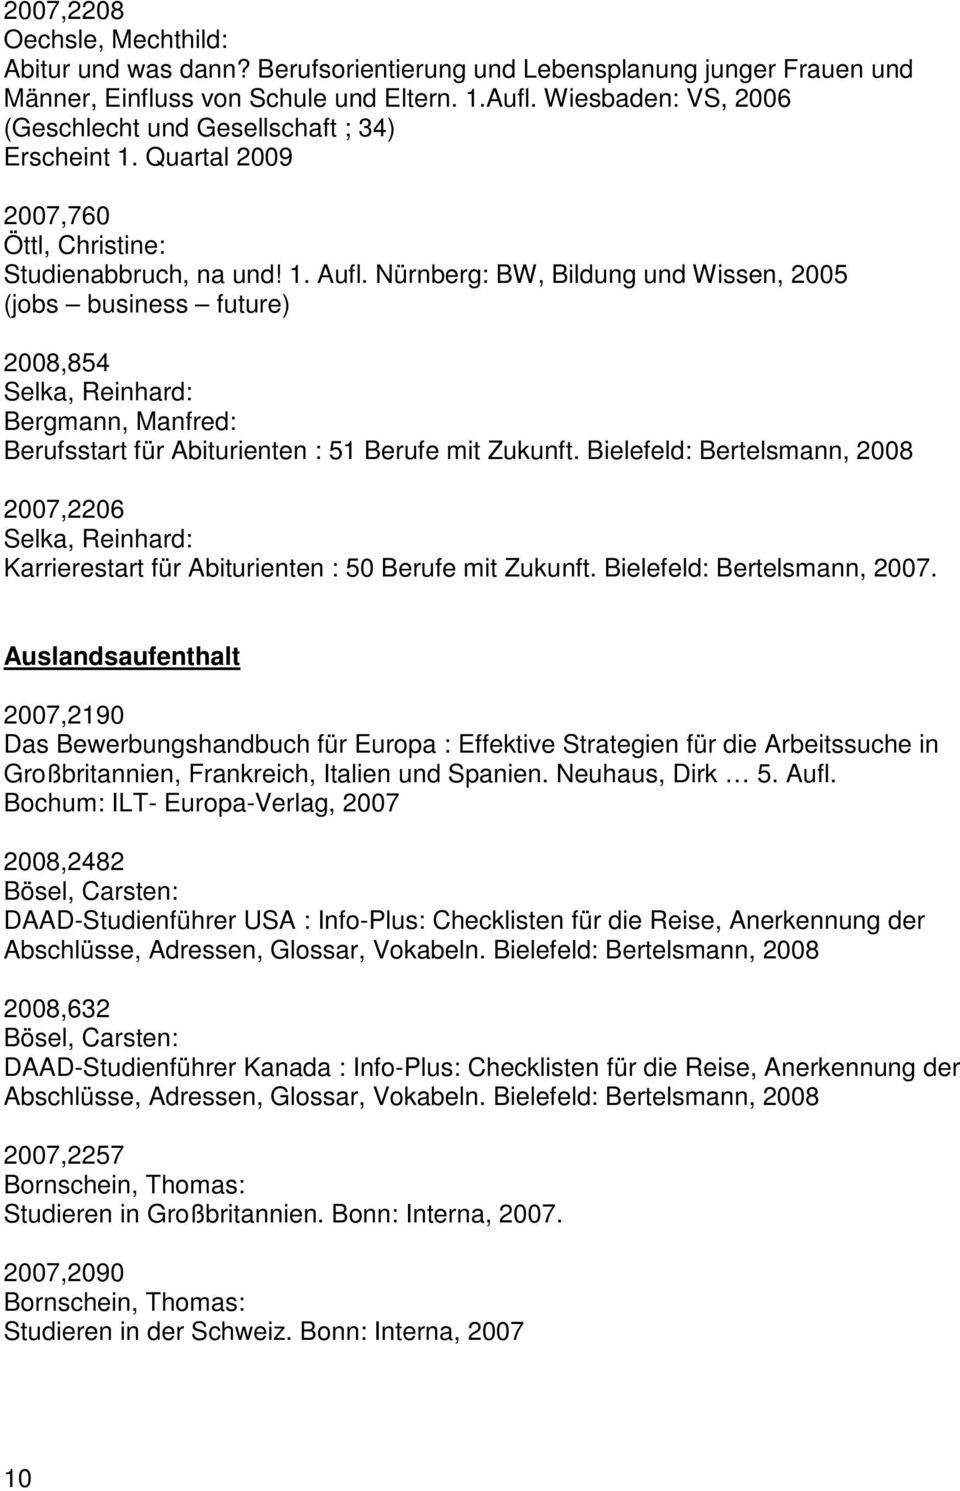 Nürnberg: BW, Bildung und Wissen, 2005 (jobs business future) 2008,854 Selka, Reinhard: Bergmann, Manfred: Berufsstart für Abiturienten : 51 Berufe mit Zukunft.